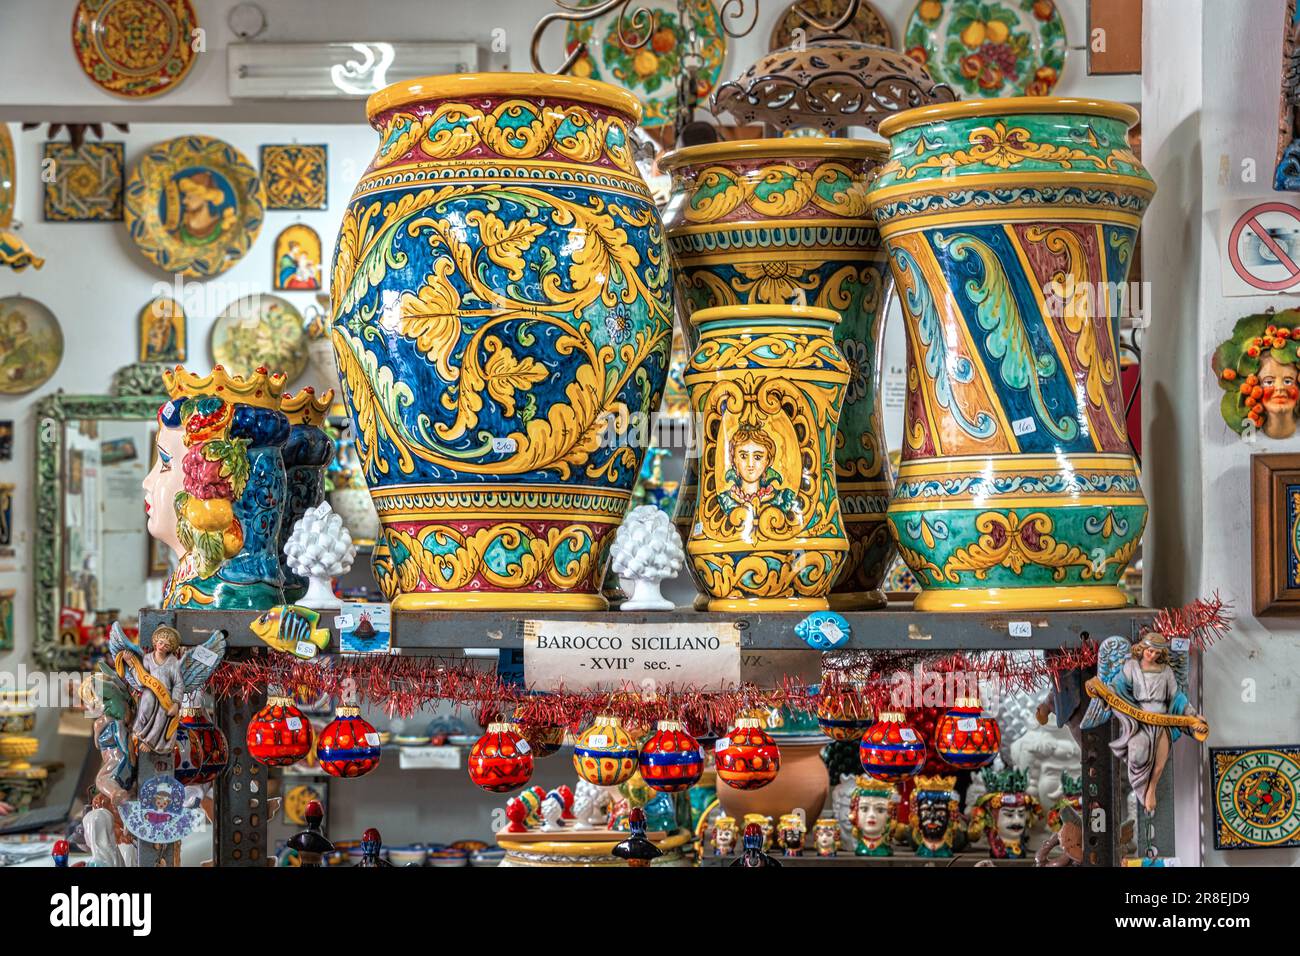 Traditioneller sizilianischer Keramikshop in Santo Stefano di Camastra. Teller, Becher, Büsten, Vasen, farbige Behälter und handgefertigte Produkte. Sizilien Stockfoto